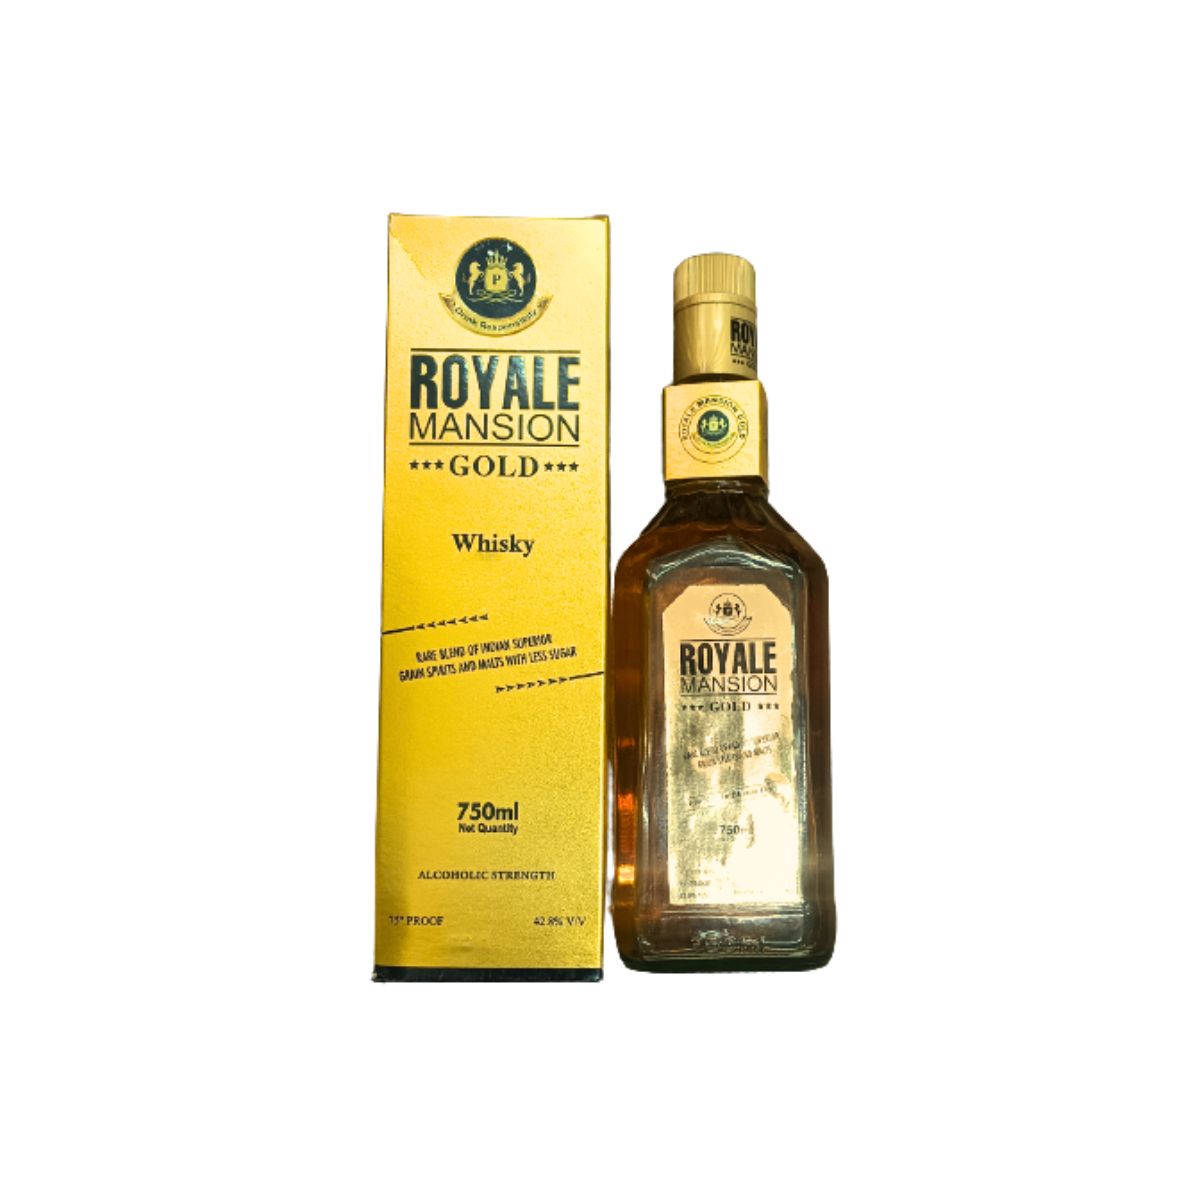 Royale Mansion - Gold Whisky - Rare Blend Of Grain Spirits & Malts - 42.8% v/v - 750ml